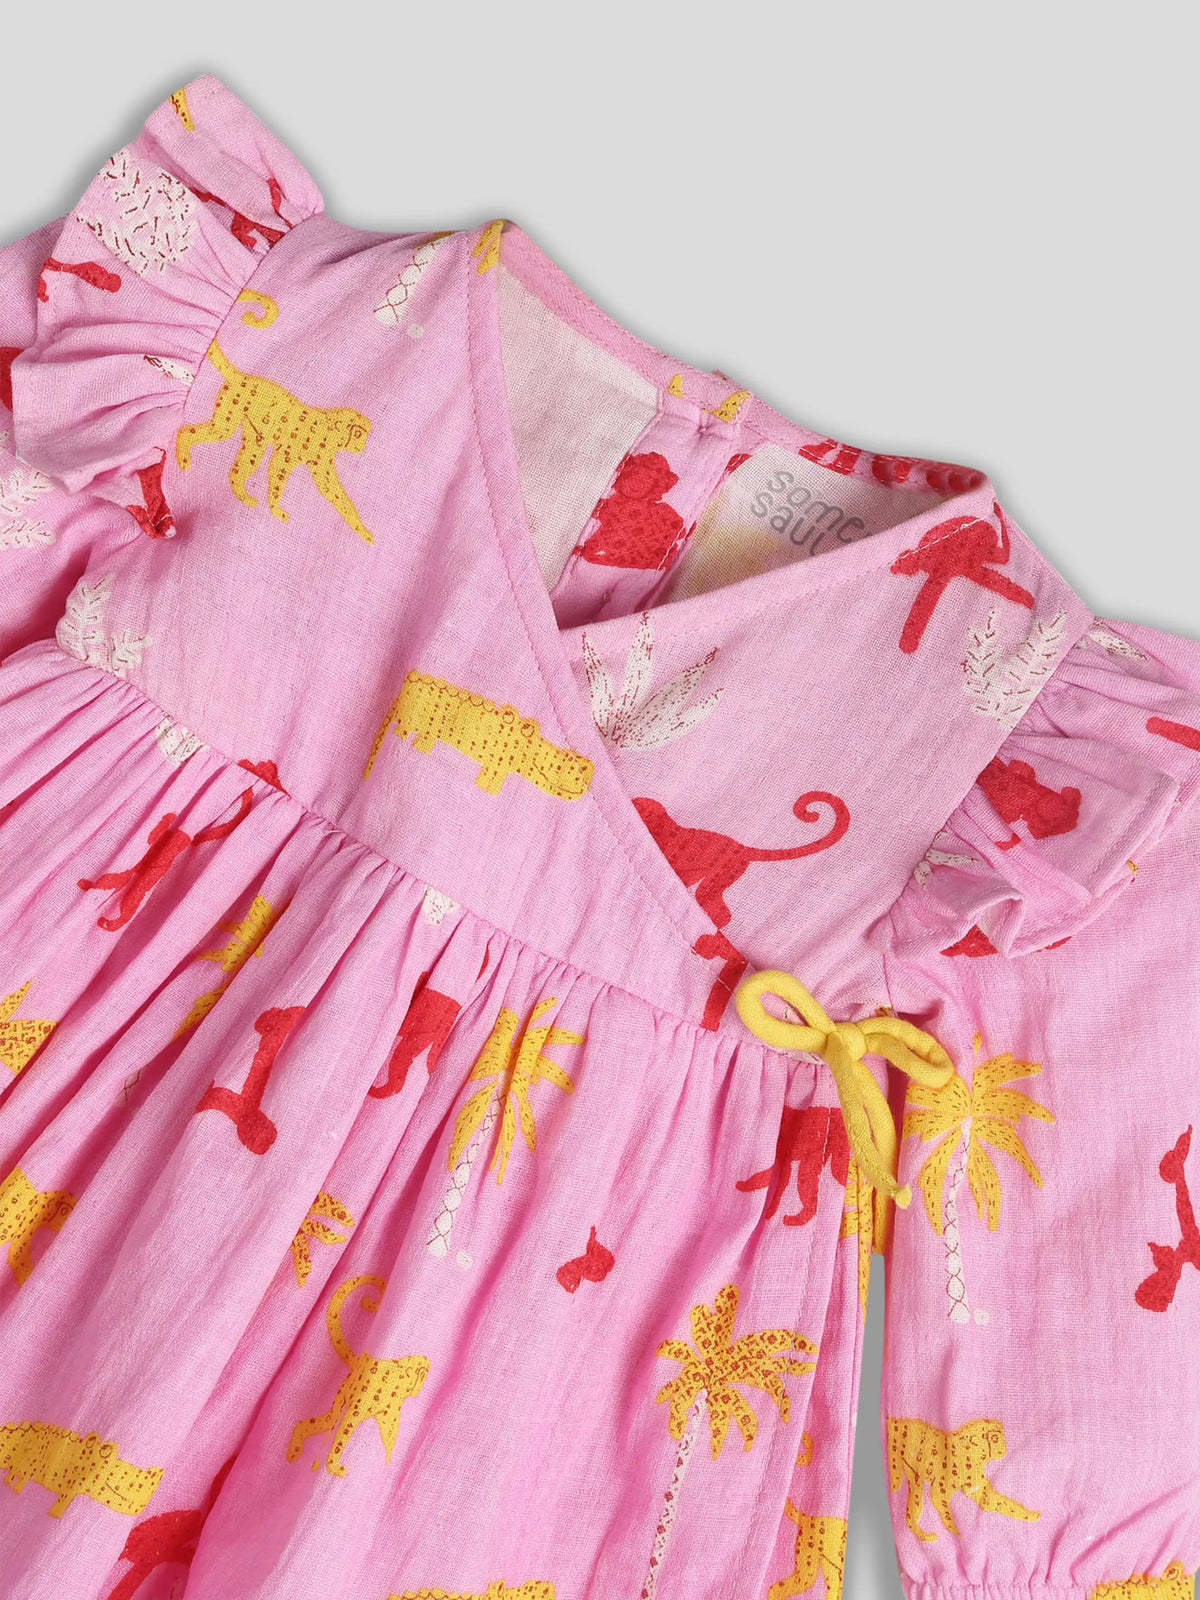 Pink Printed Panchatantra Dress Somersault